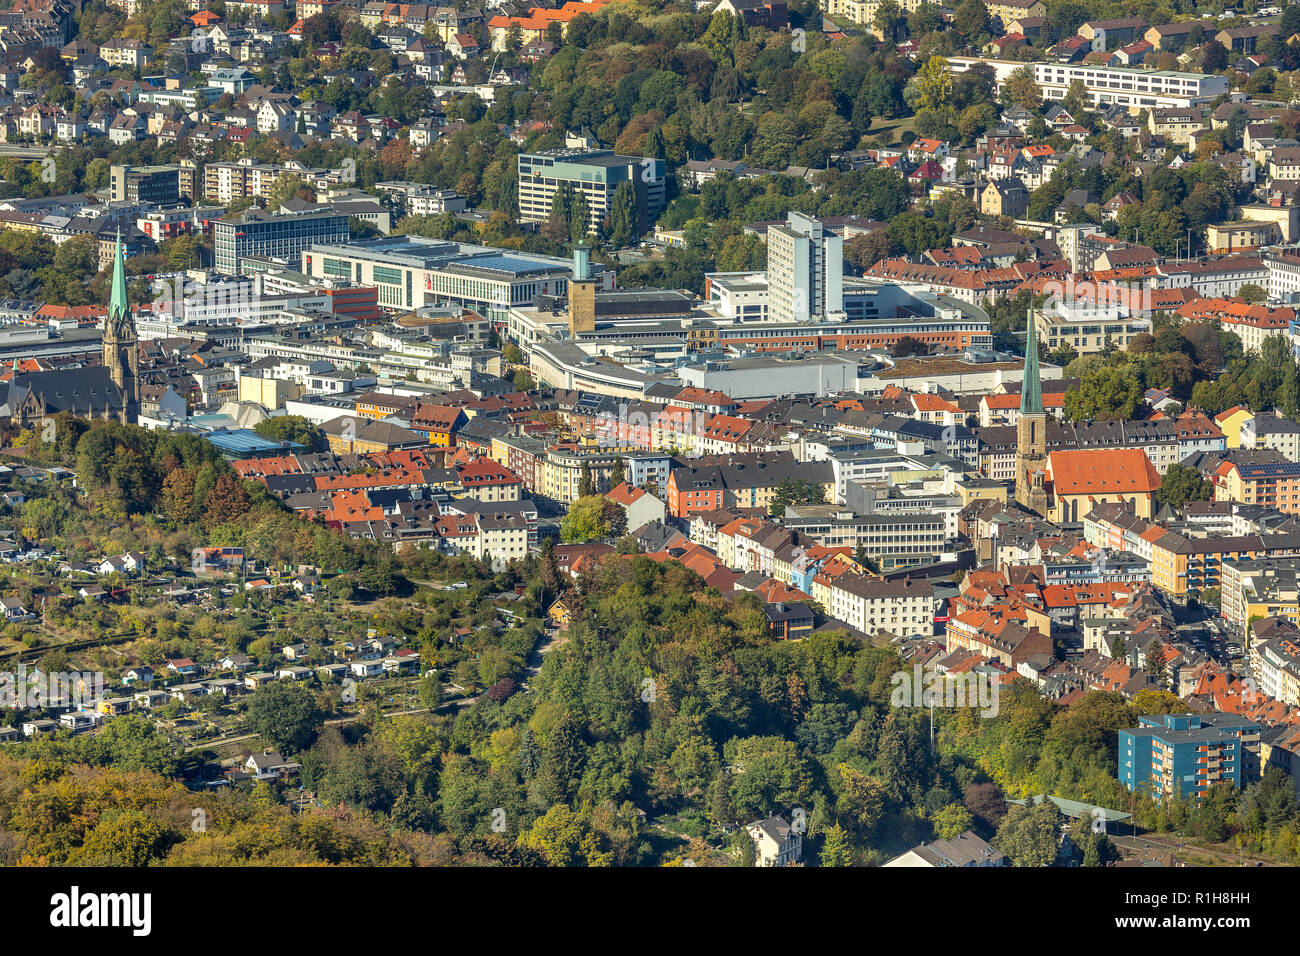 Stadt Hagen, Hagen, Ruhrgebiet, Nordrhein-Westfalen, Deutschland Stockfoto